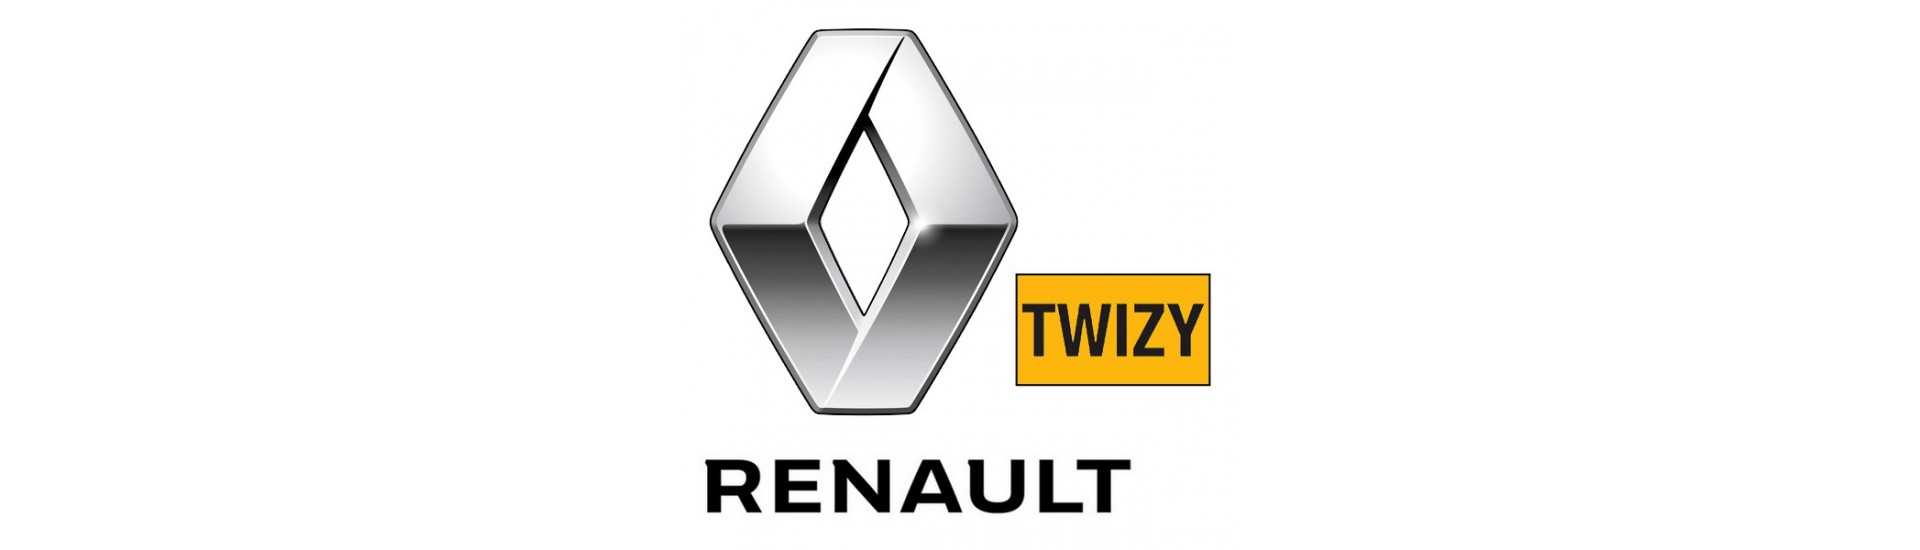 Fenster für den besten Preis Auto ohne Lizenz Renault Twizy